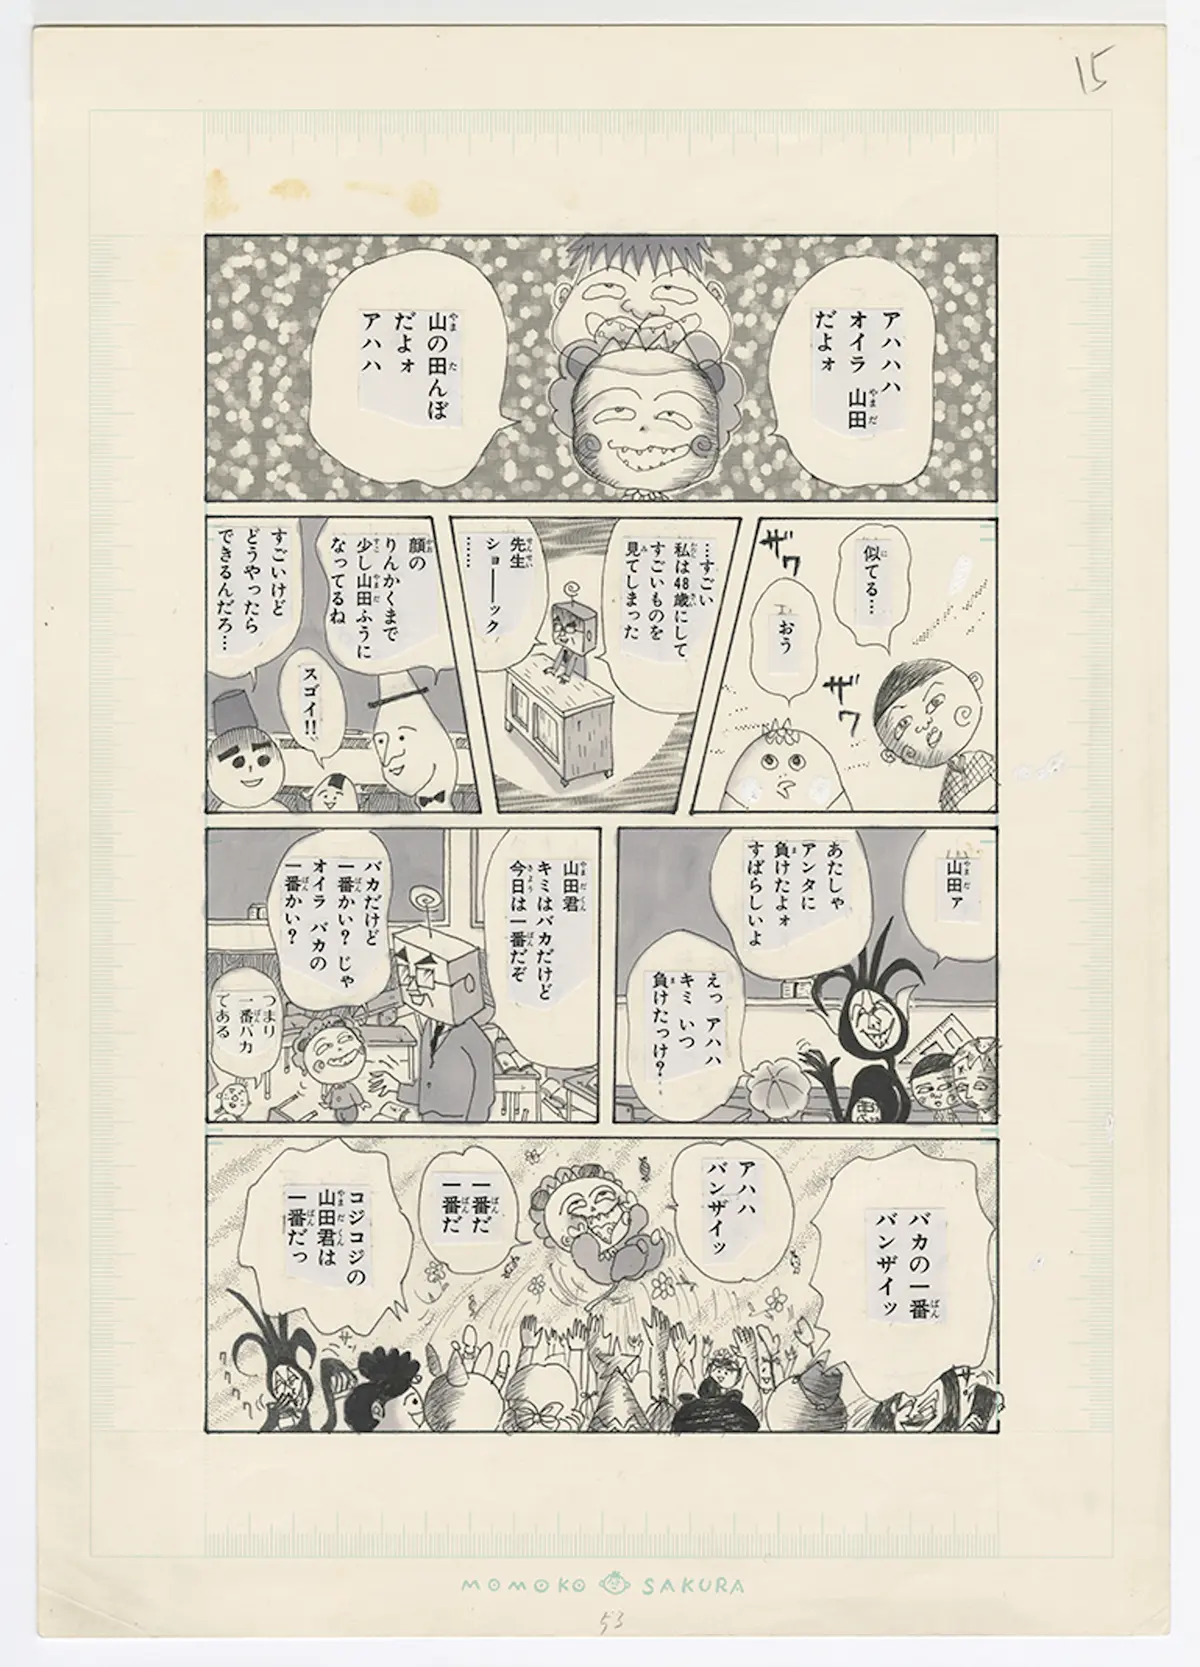 COJI-COJI　第3話 学級劇 ちびまる子ちゃん の巻「きみとぼく」1995年2月号　ソニー・マガジンズ